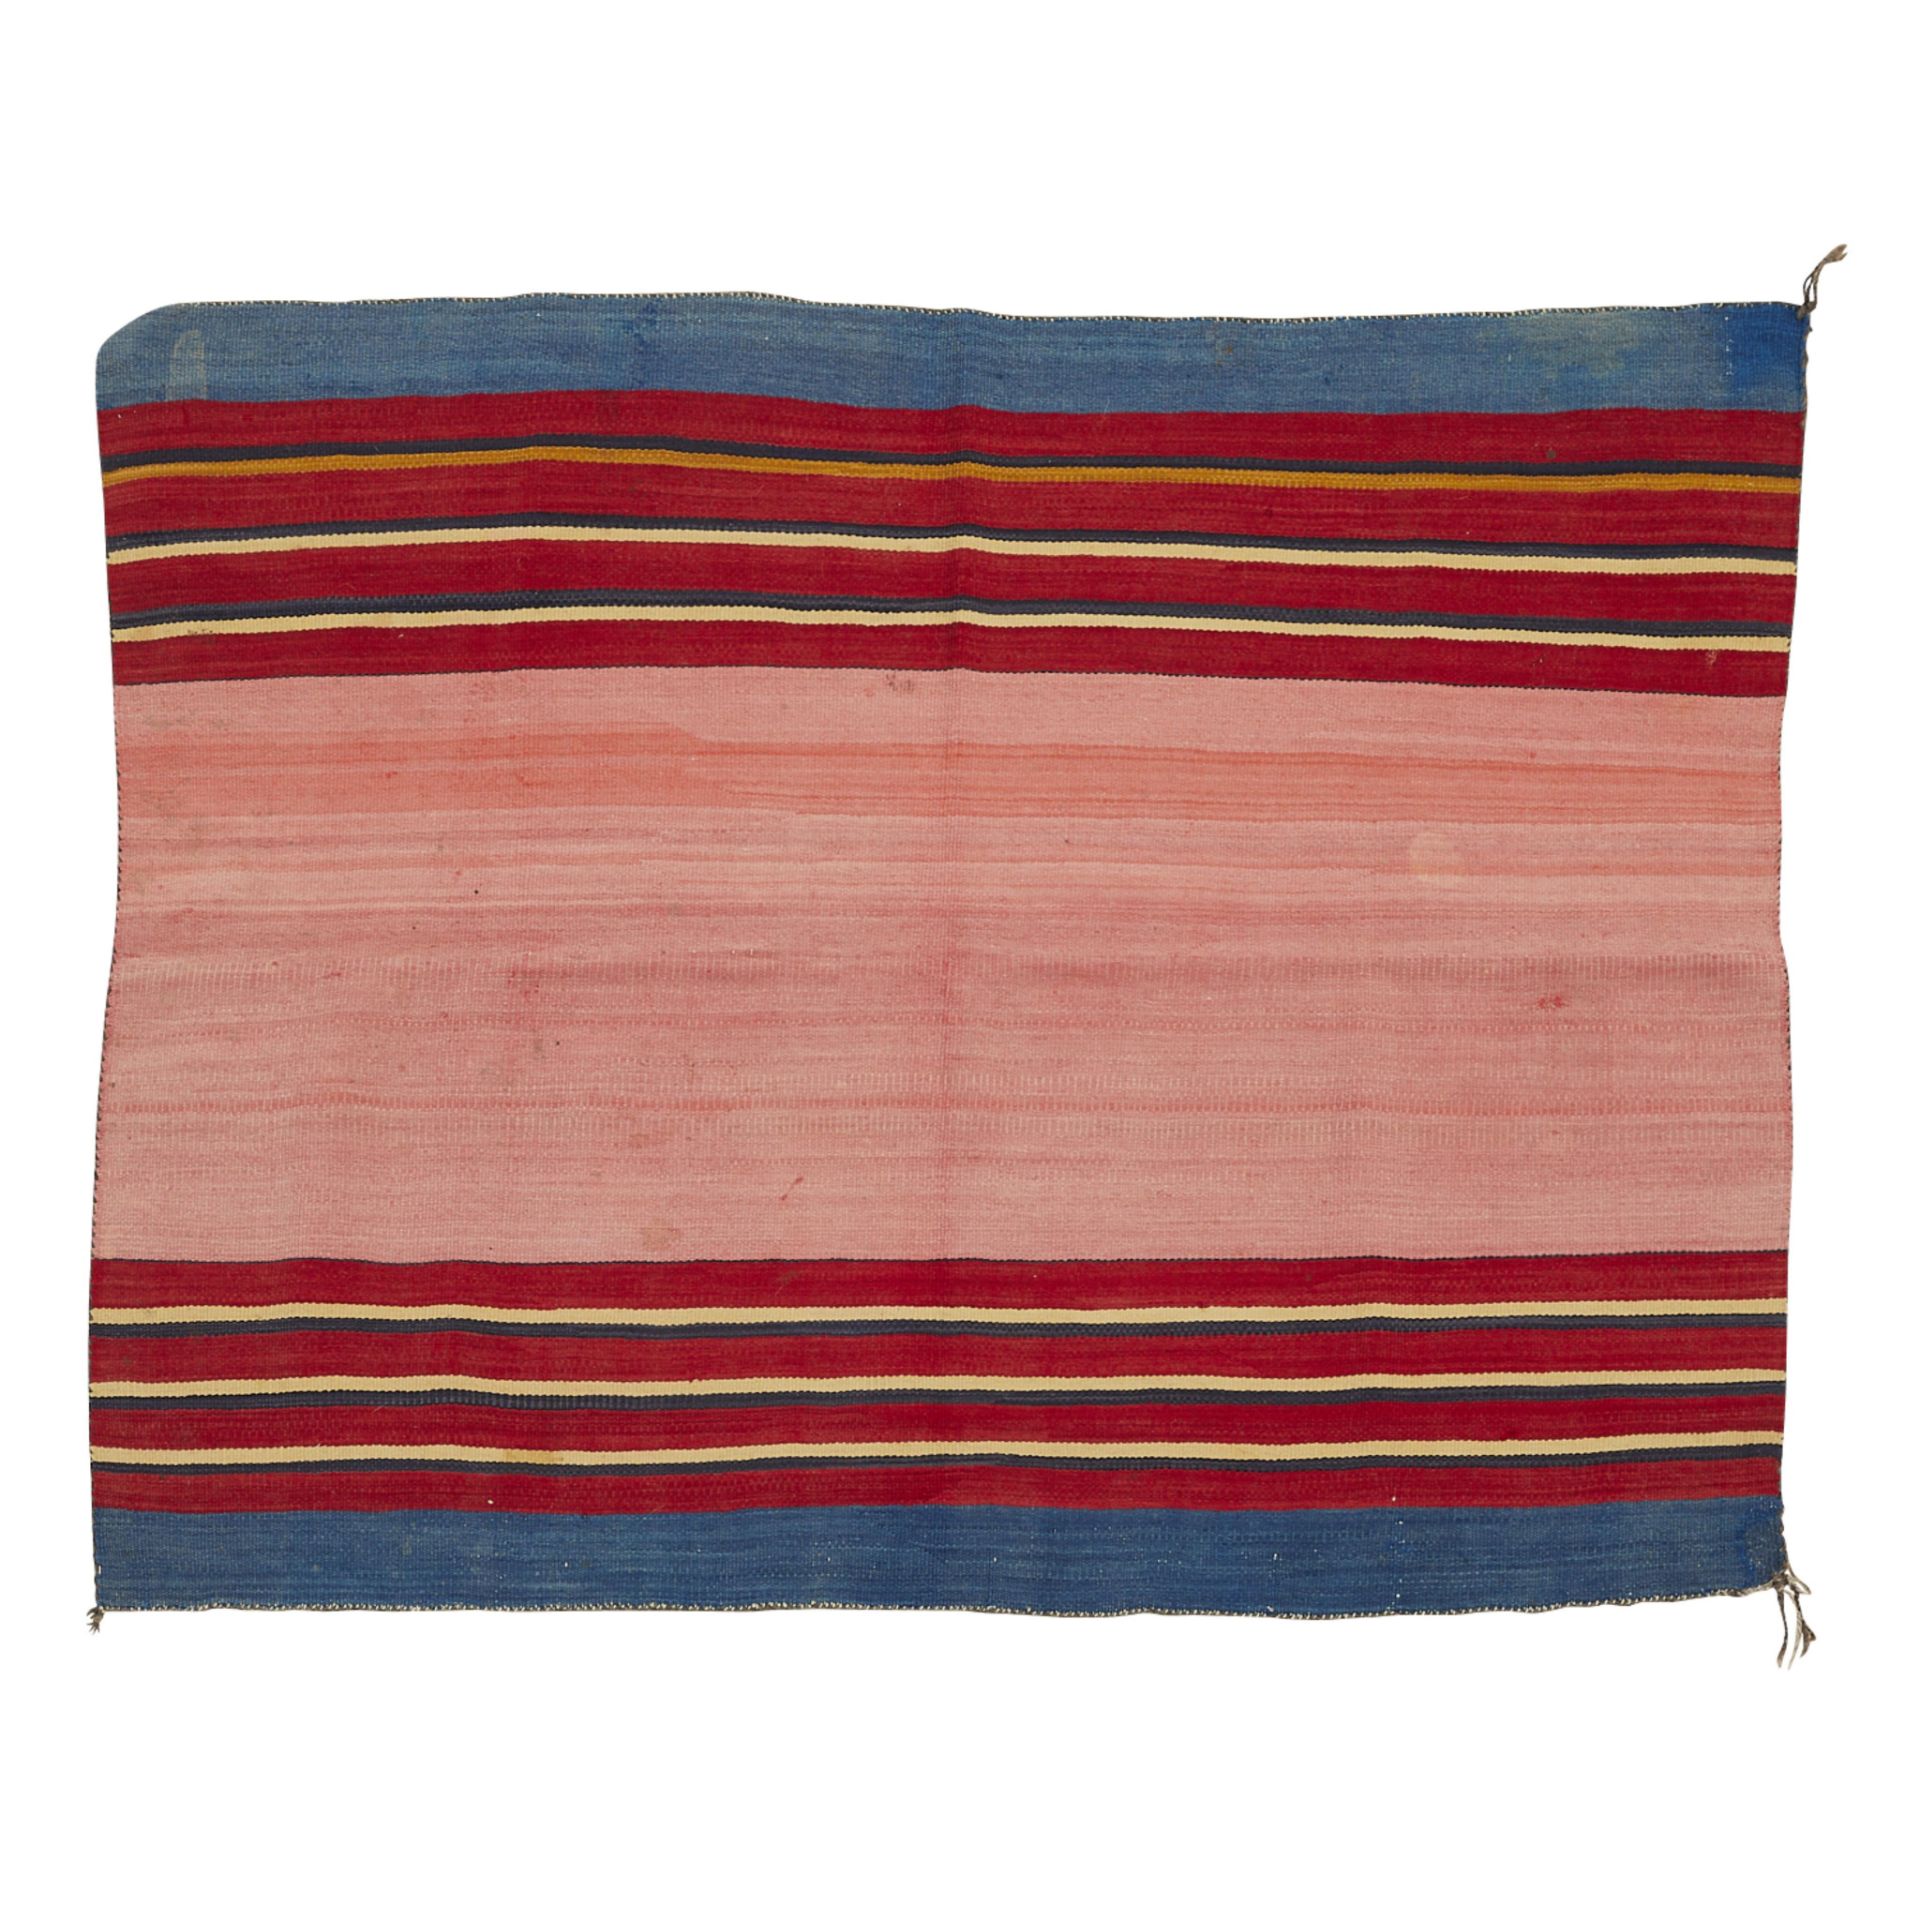 Navajo Adult Wearing Blanket 4'5" x 3'5" - Image 3 of 6